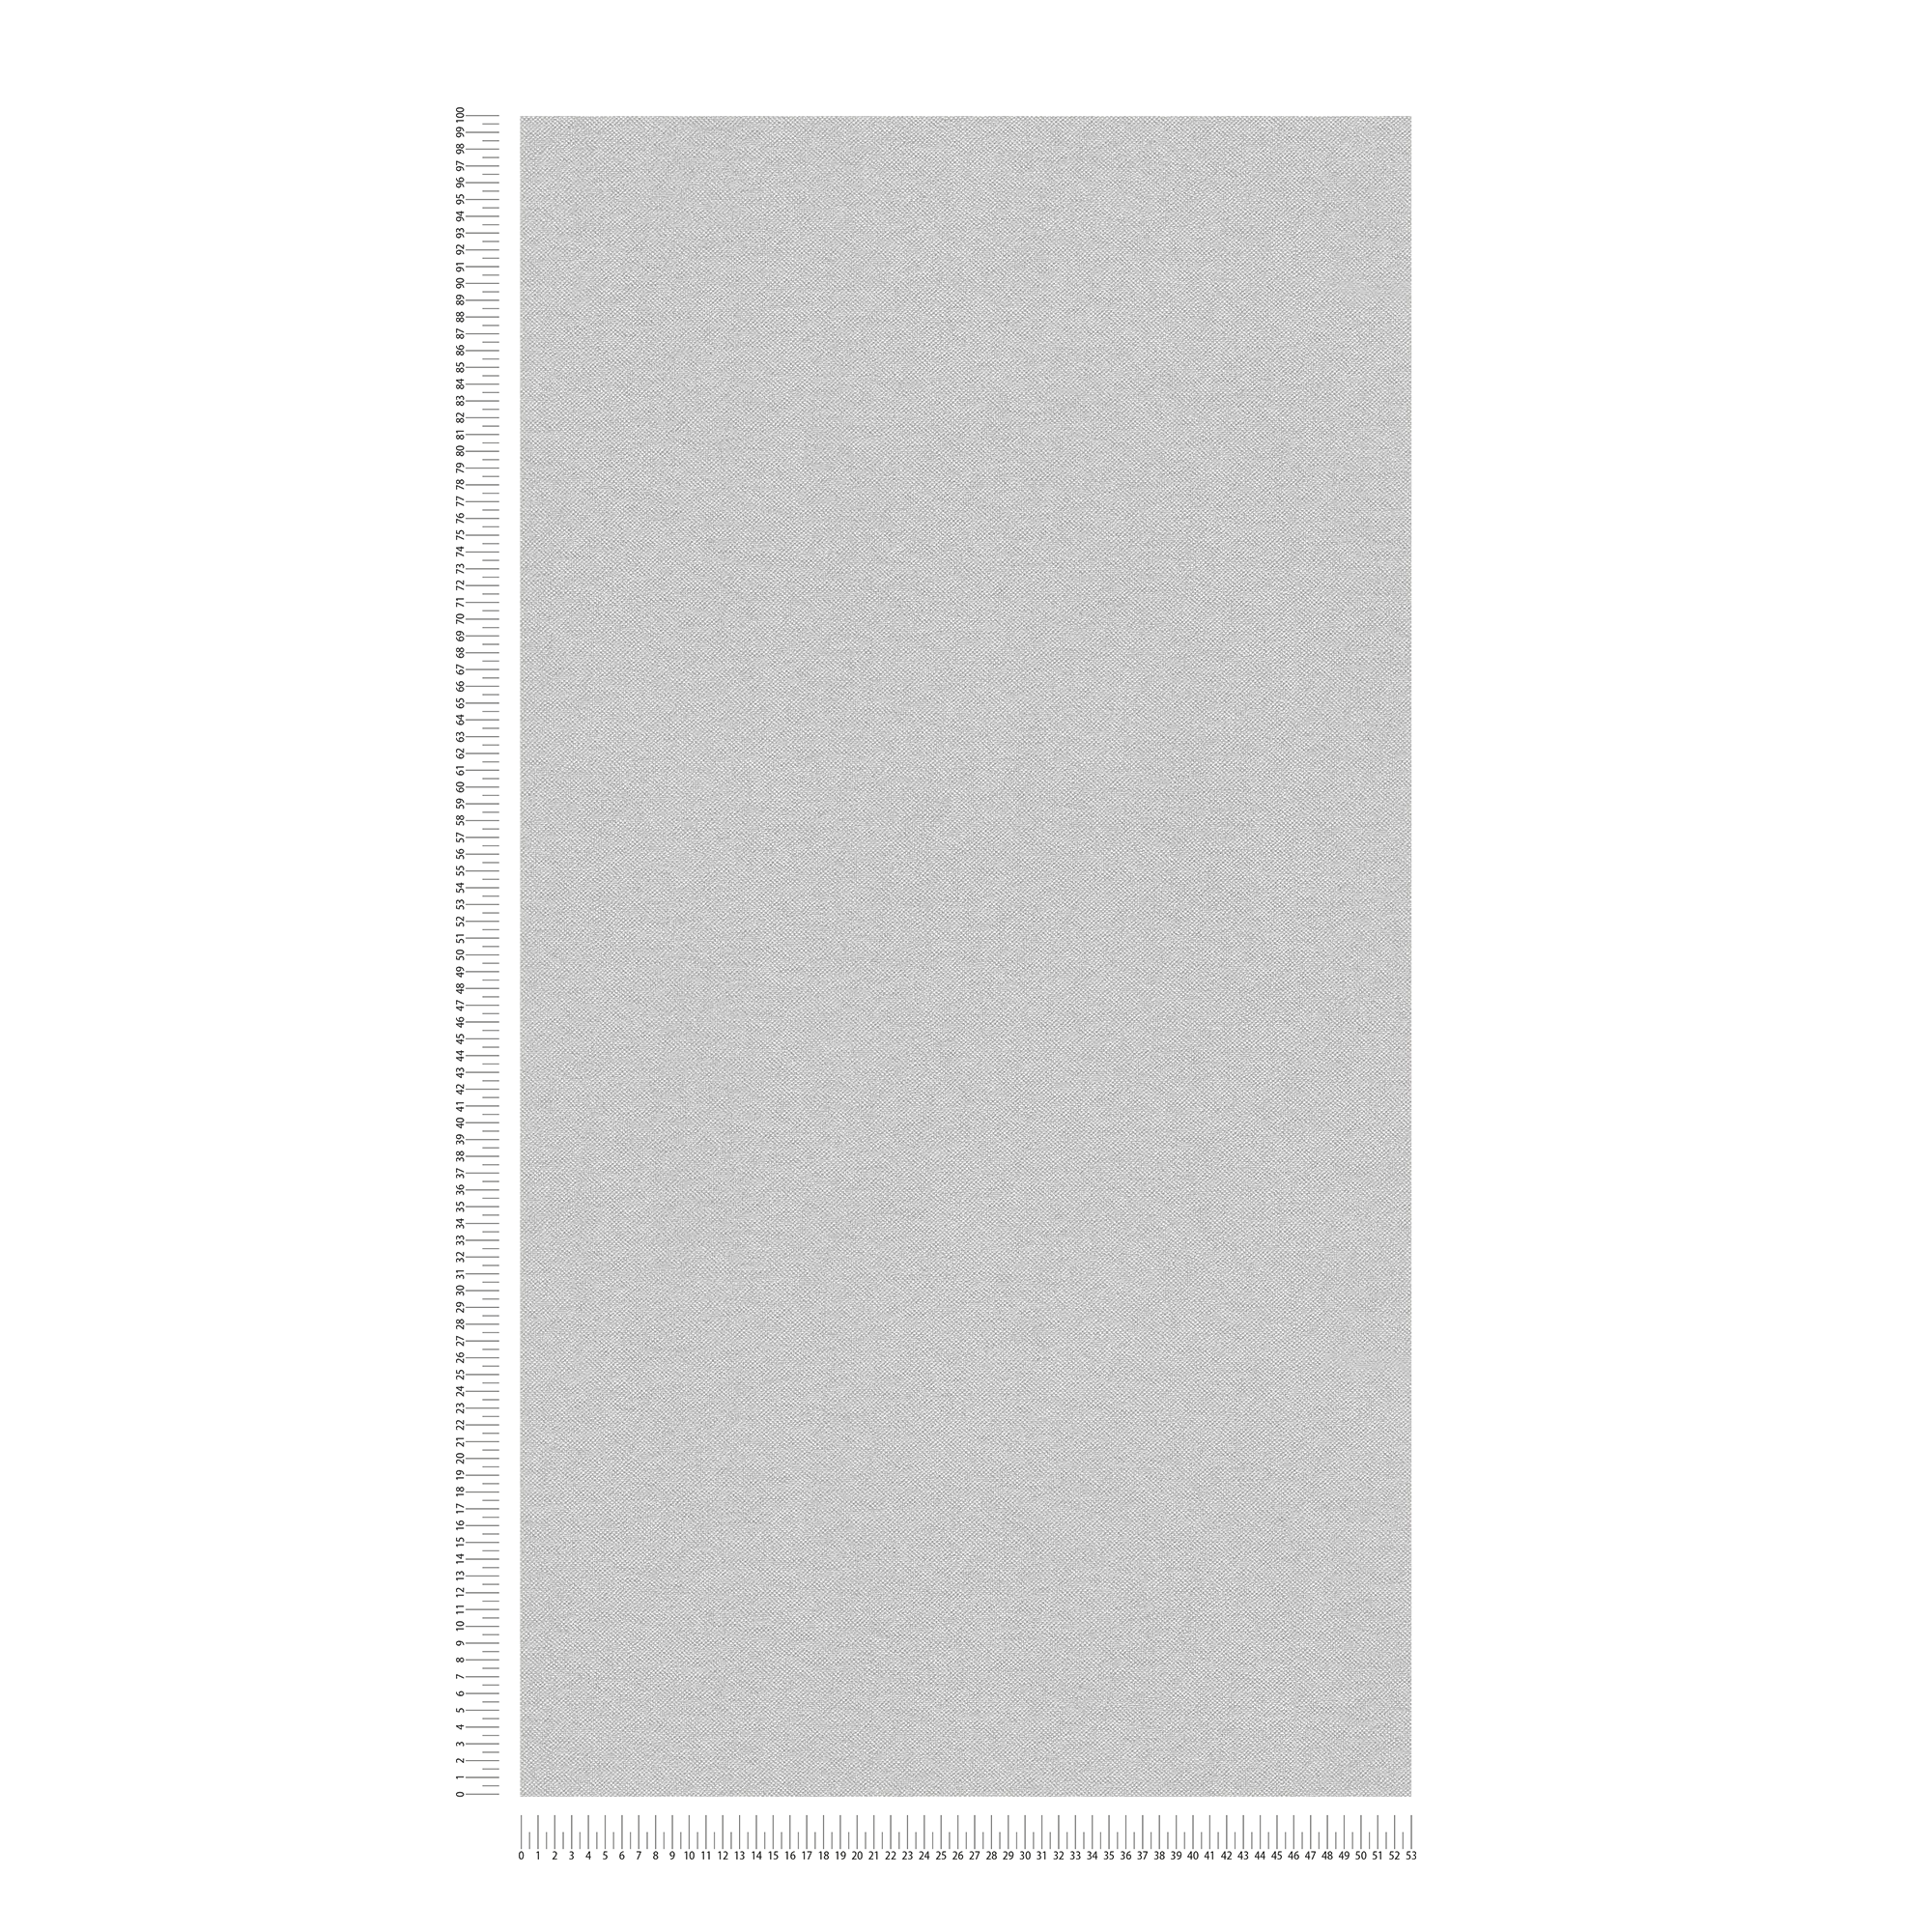             Papier peint gris avec structure textile en design scandinave
        